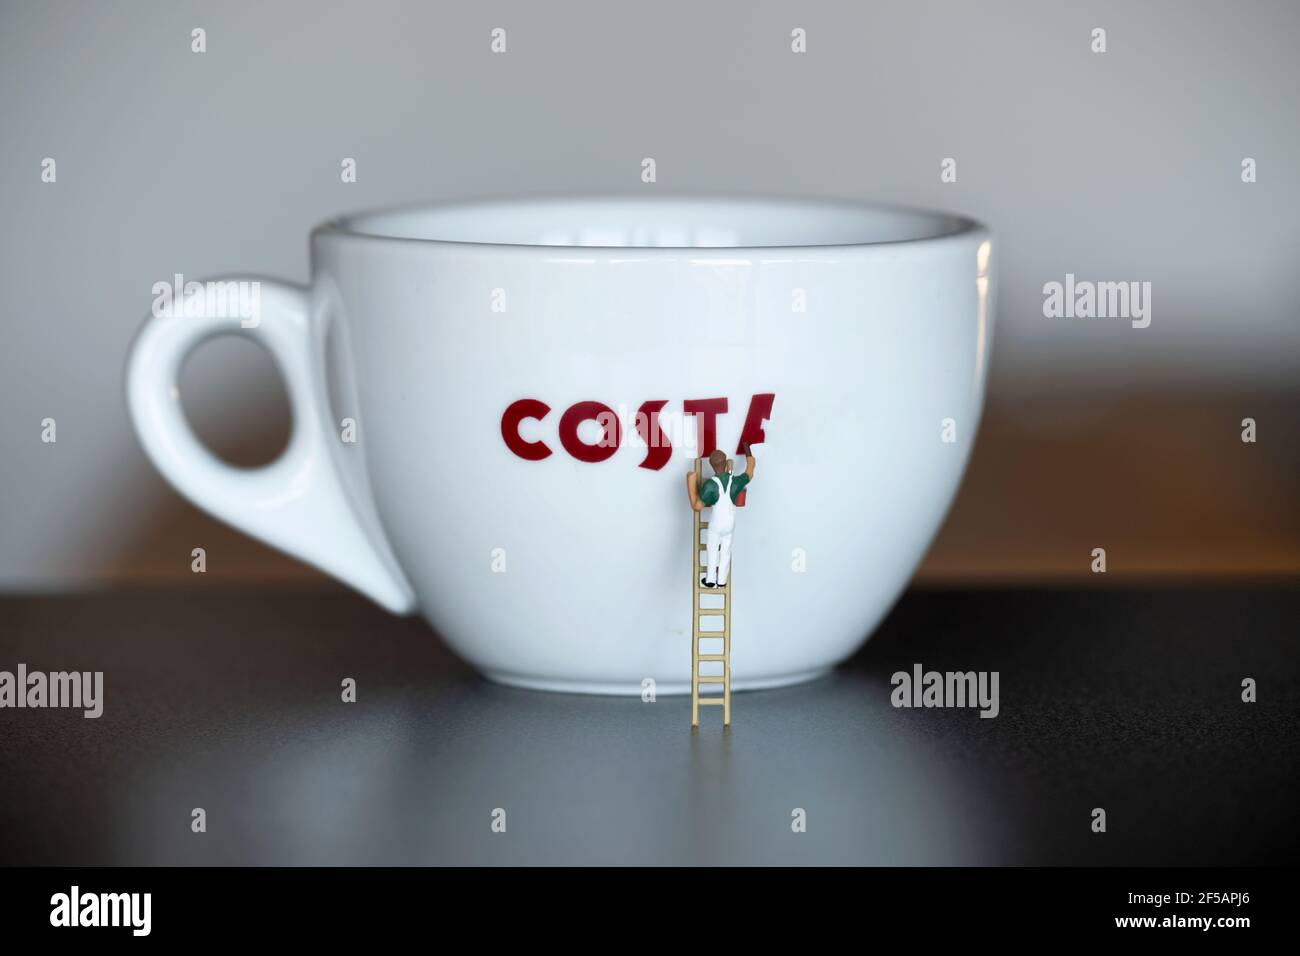 Una pequeña figura de pintor y decorador en miniatura a escala 00 se muestra usando una escalera para pintar el logotipo de la marca Costa Coffee en una taza de café costa. Foto de stock